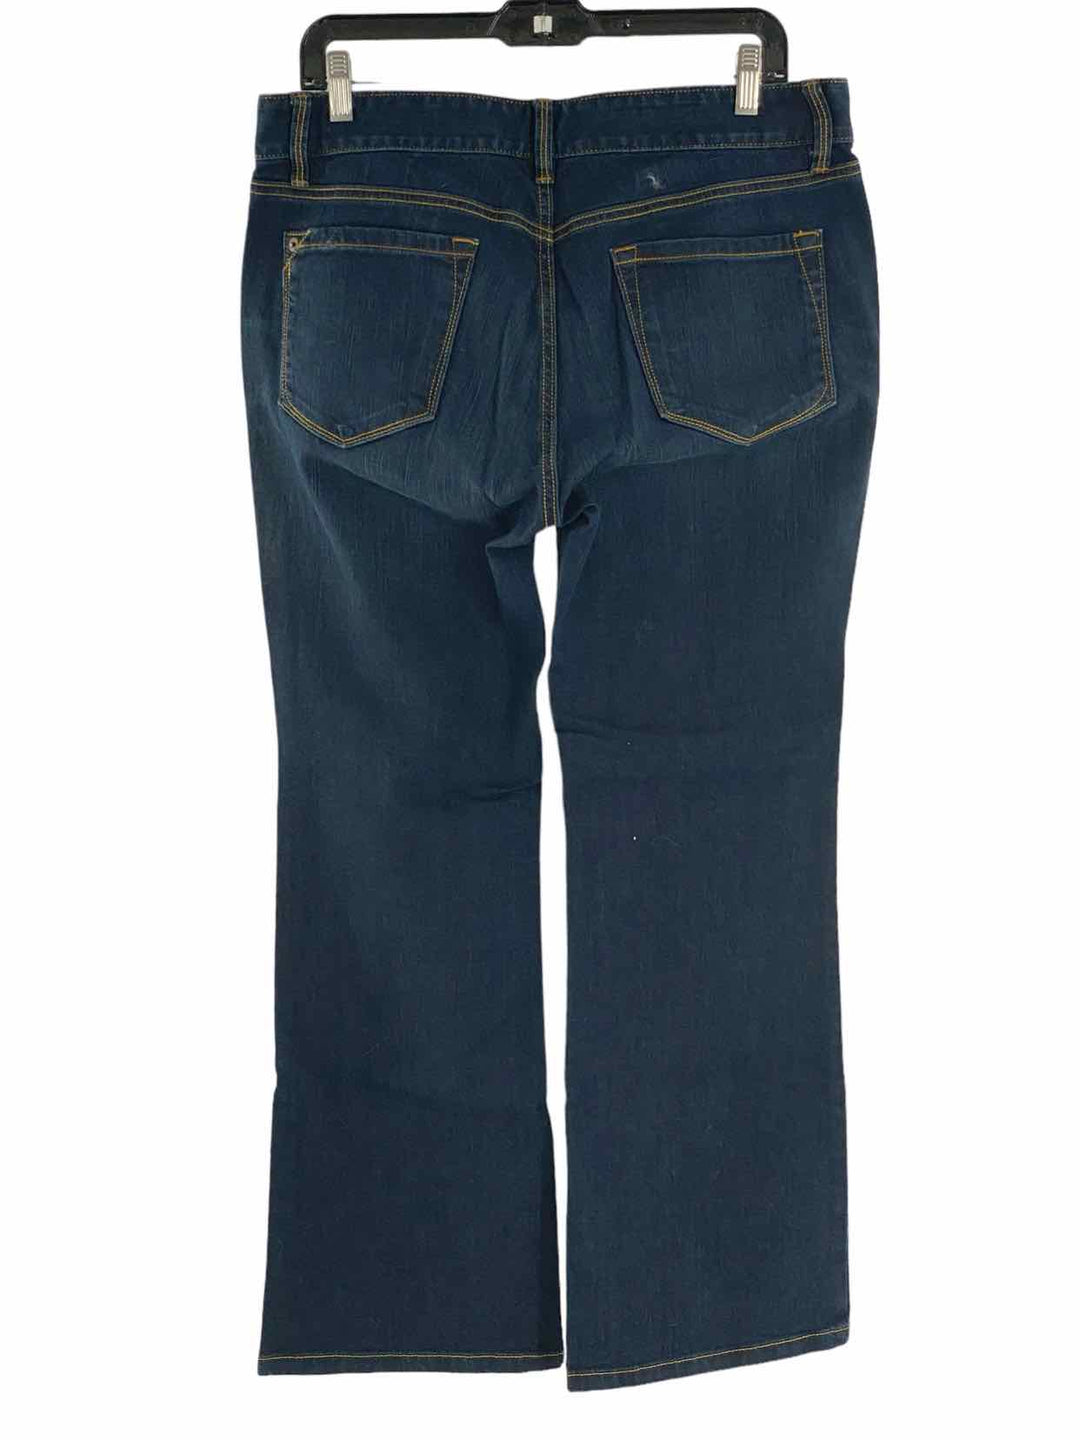 Loft Size 12 Blue Jeans